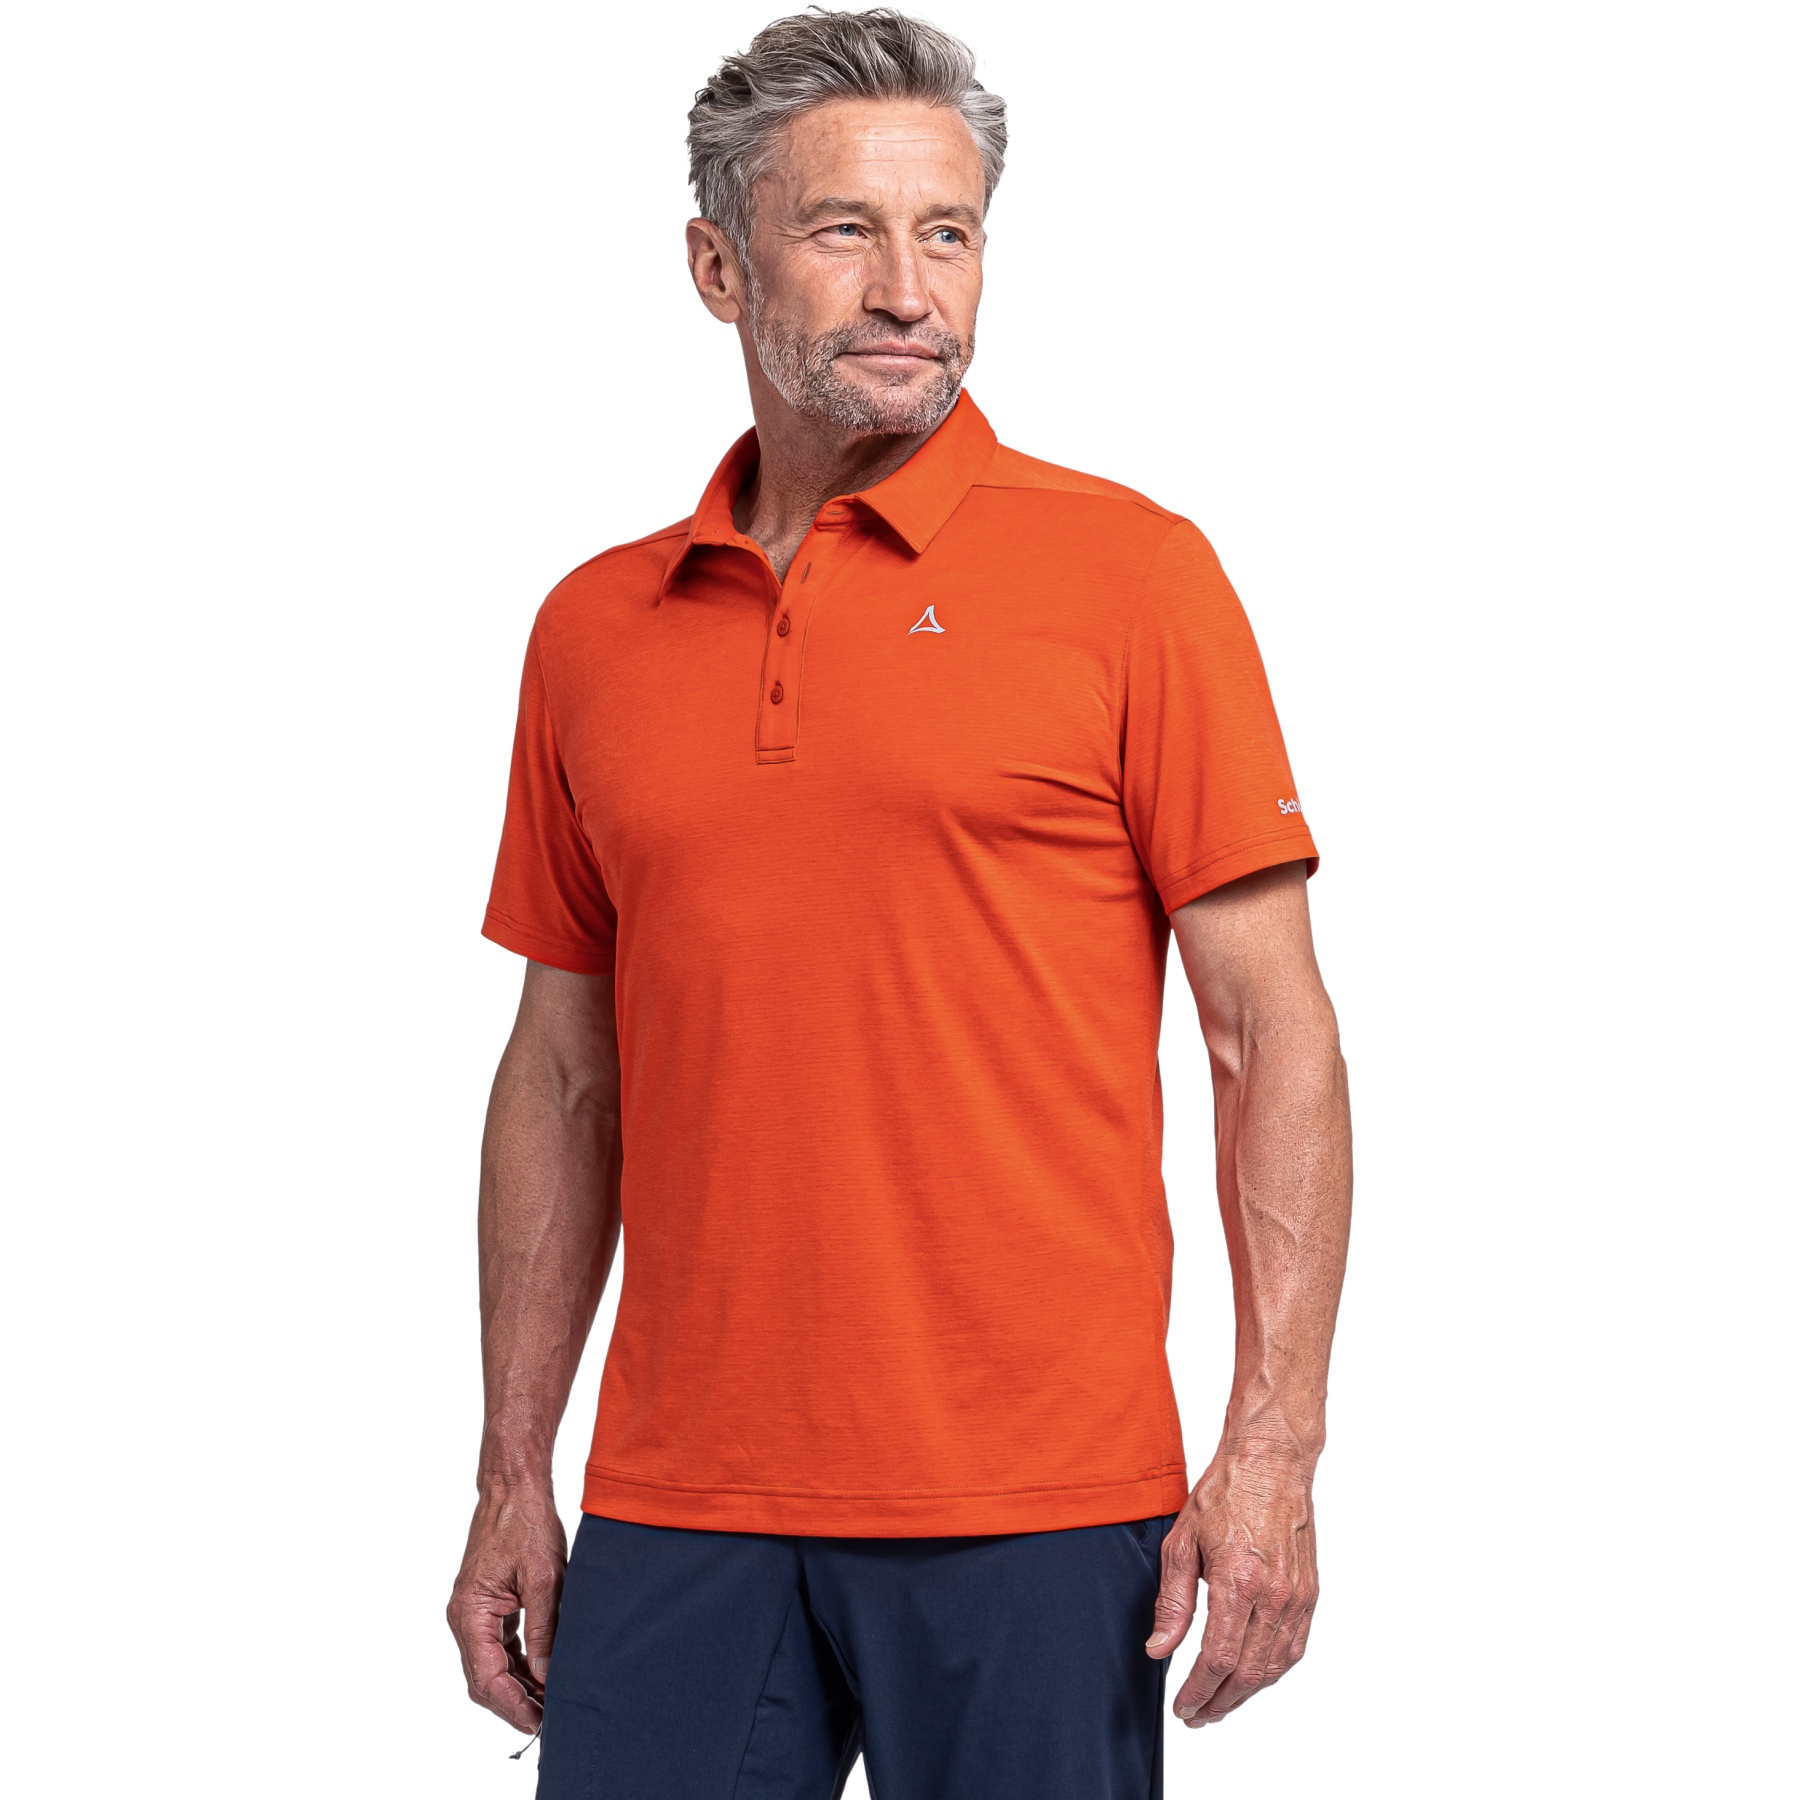 Picture of Schöffel Tauron CIRC Polo Shirt Men - poinciana 5480